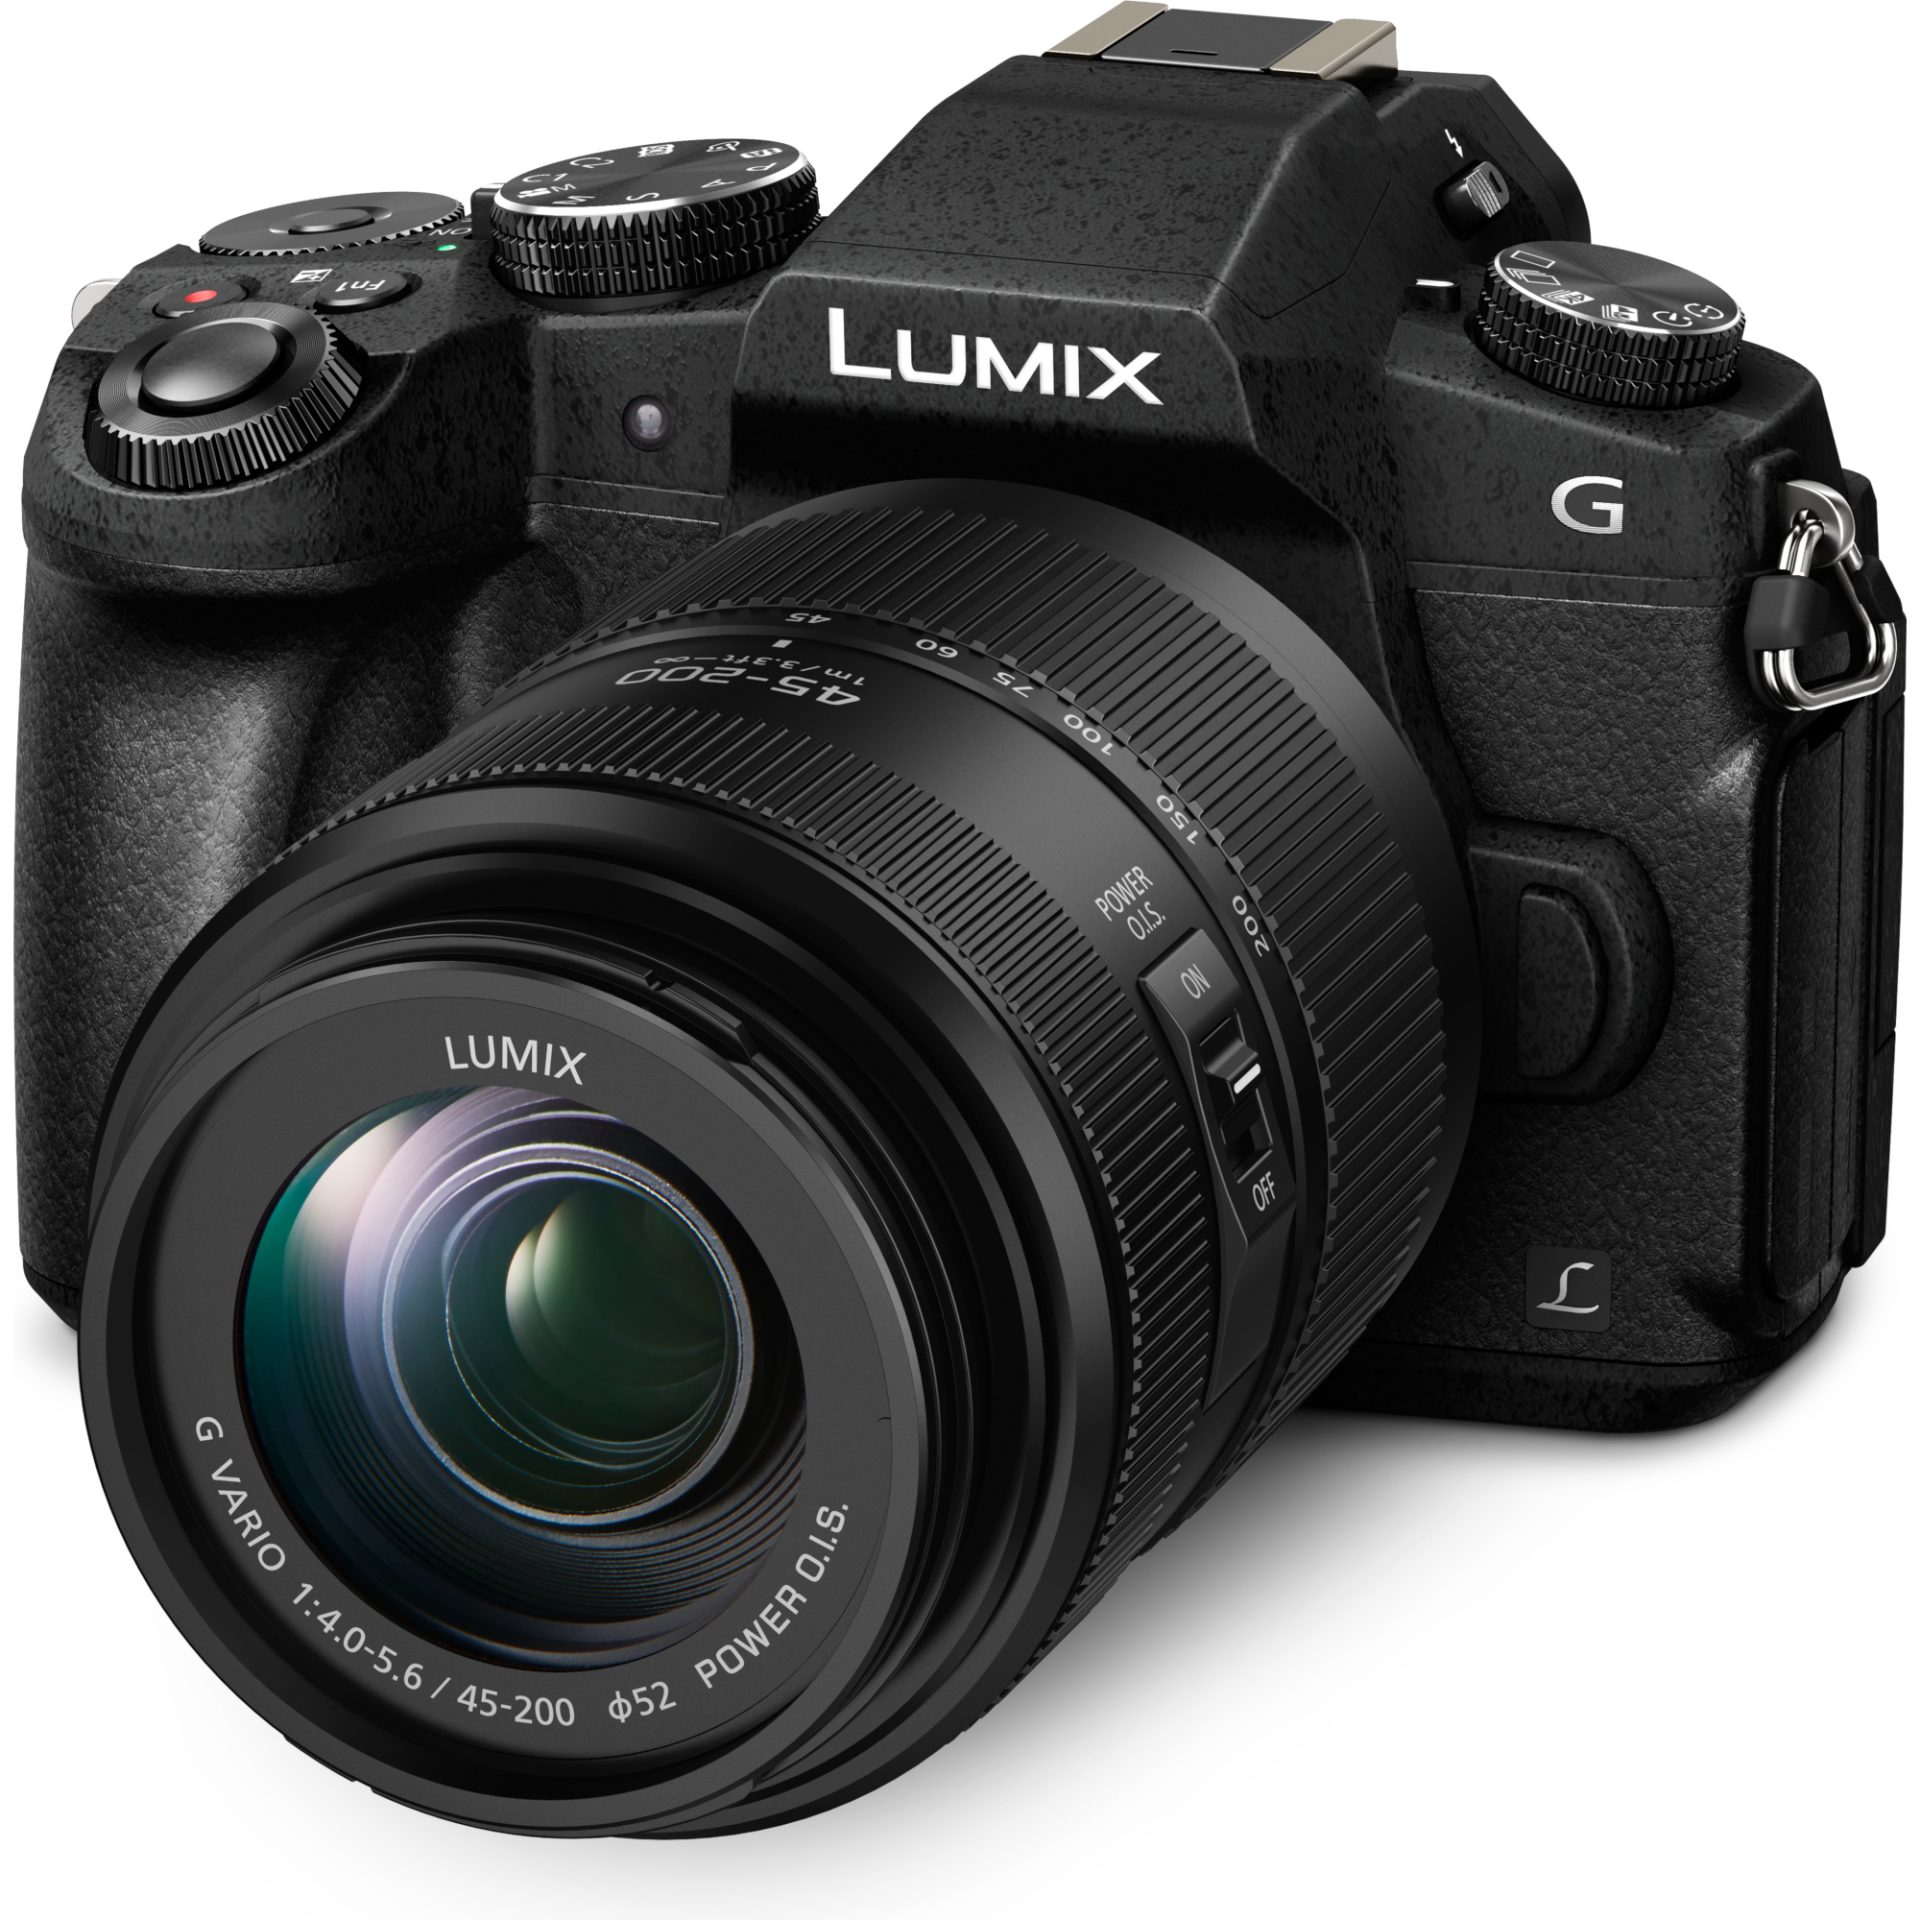 Panasonic DMC-G80W Lumix bezzrcadlový digitální fotoaparát + H-FS12060 12-60mm, F3.5-5.6 + H-FS045200 45-200mm, F4.0-5.6 (16MP, Dual I.S.2, 4K), Černá